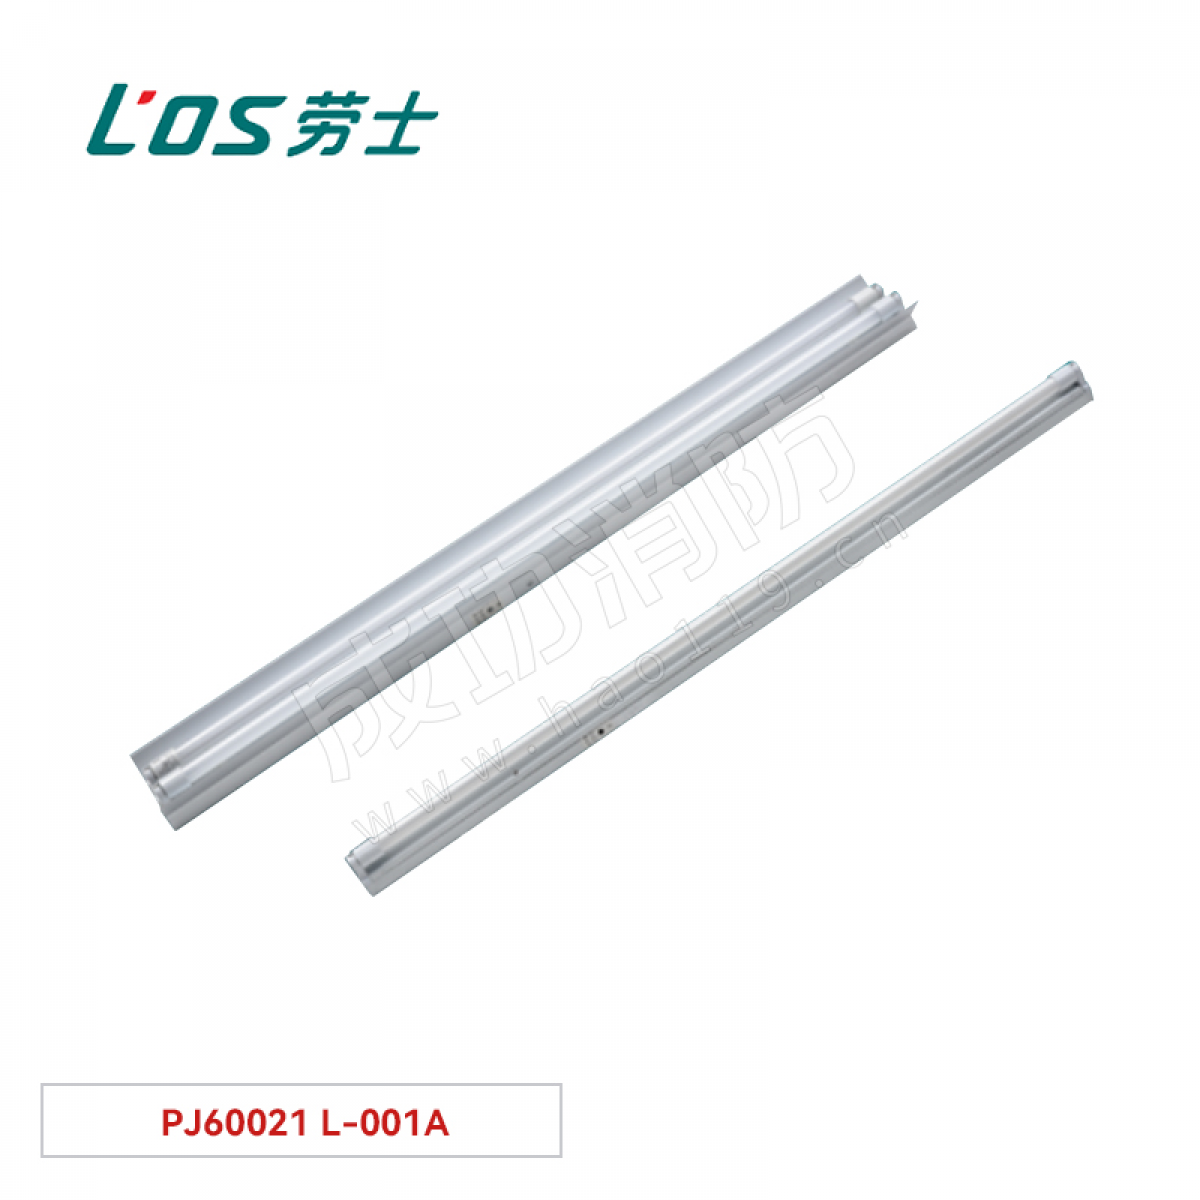 劳士 双管荧光灯(吊装式/墙装式) PJ60021 L-001A